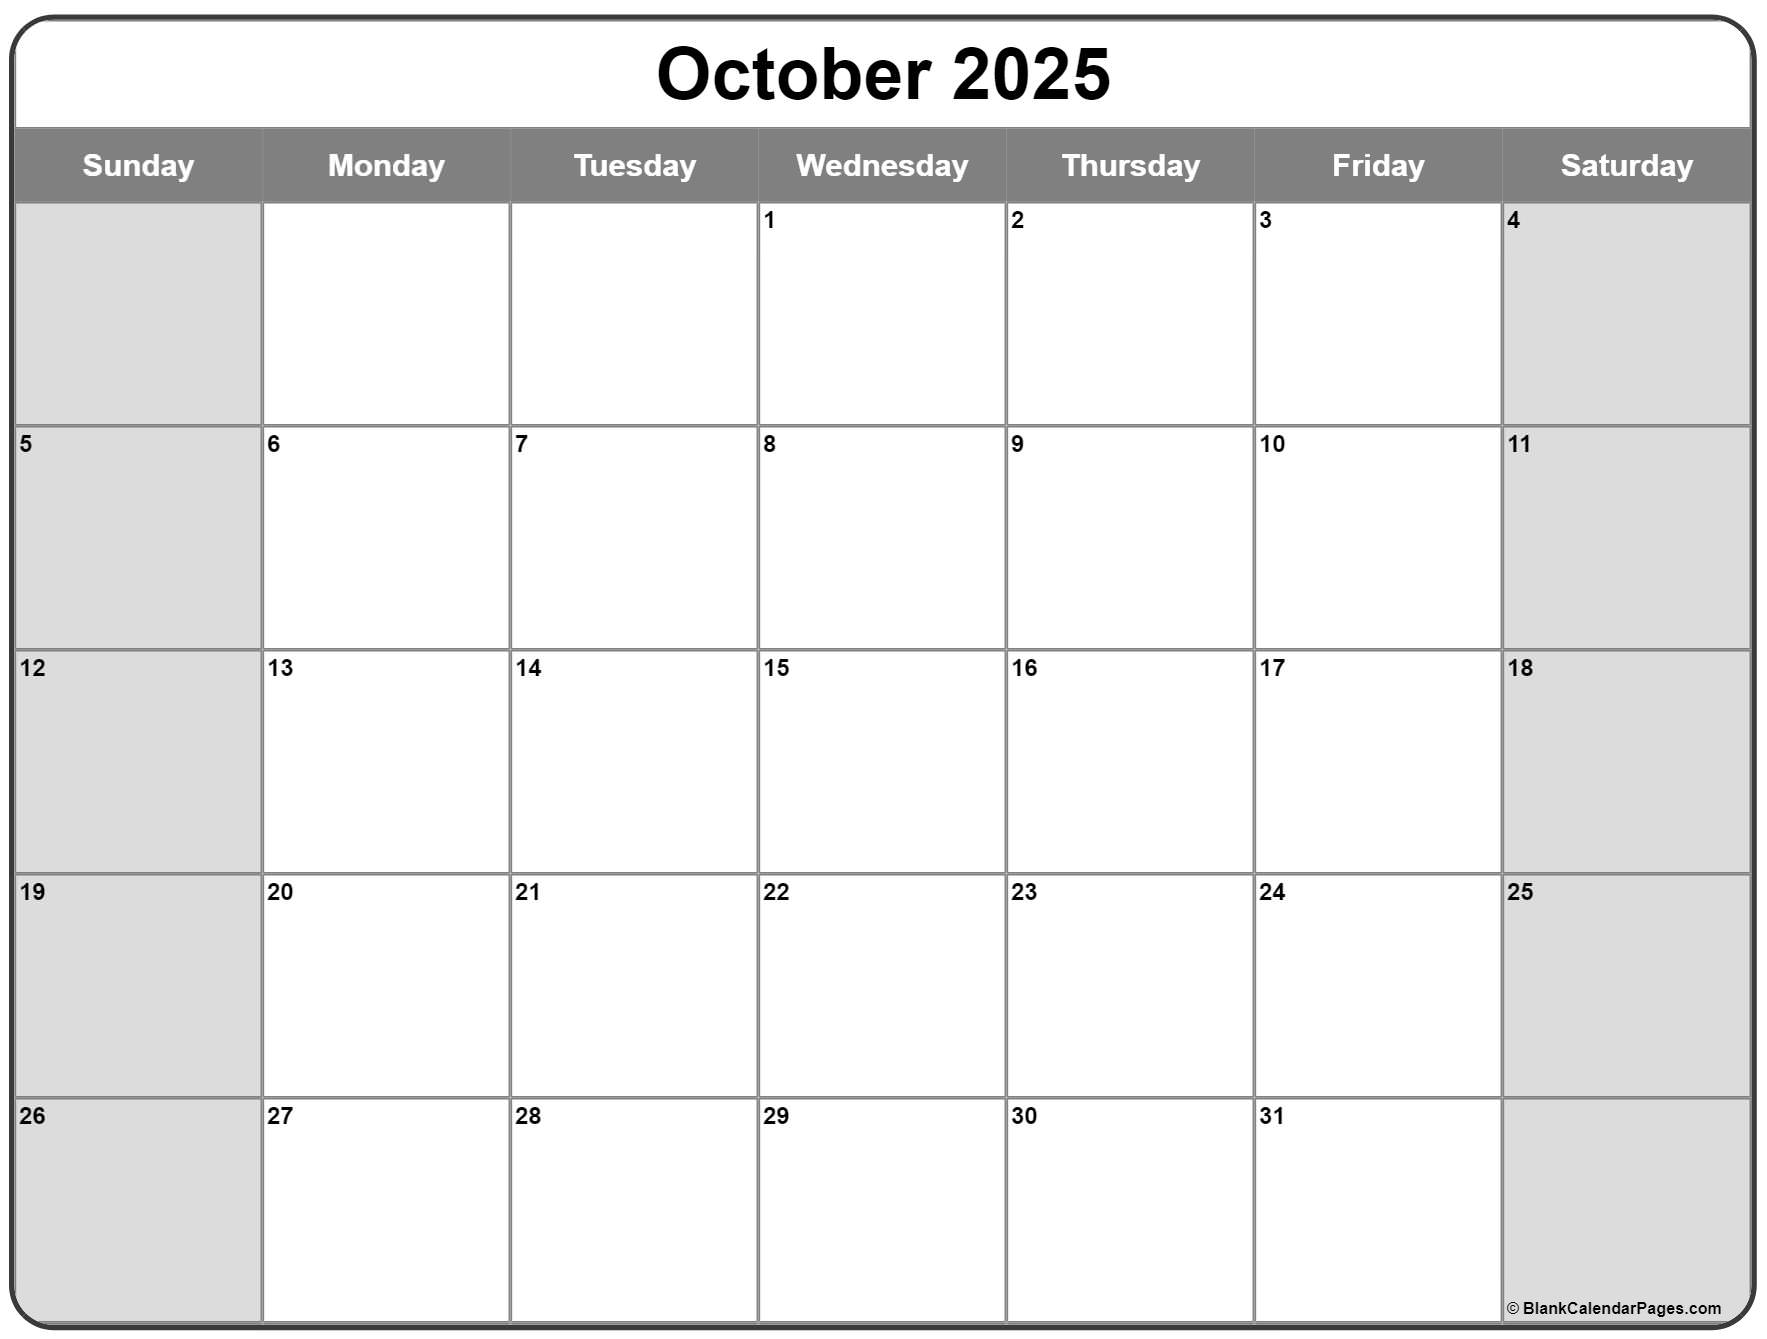 October 2025 calendar free printable calendar